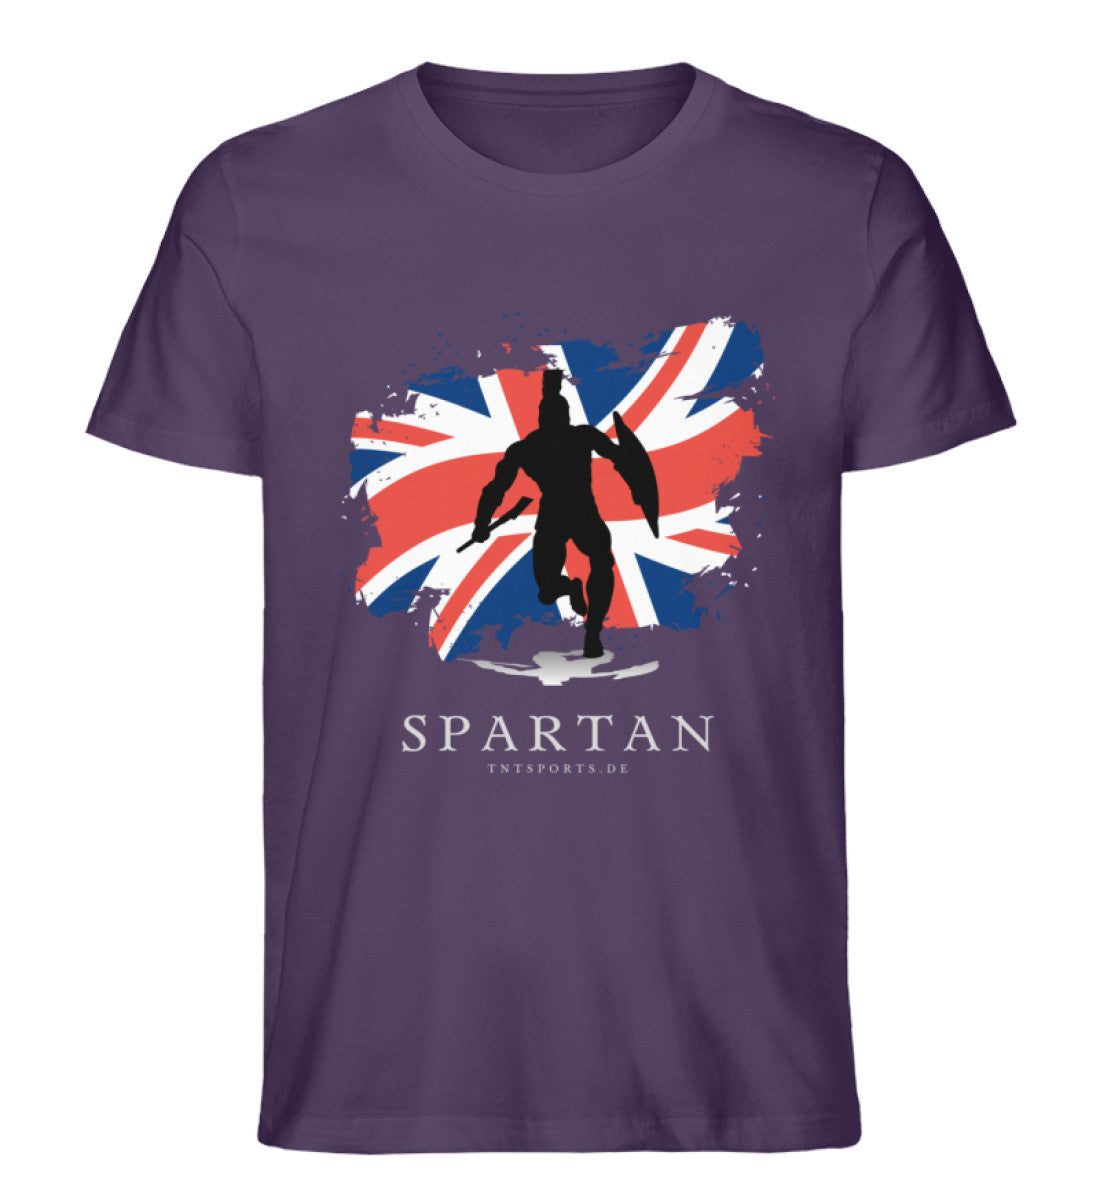 Organic Premium Unisex T-Shirt "UK SPARTAN" Plum